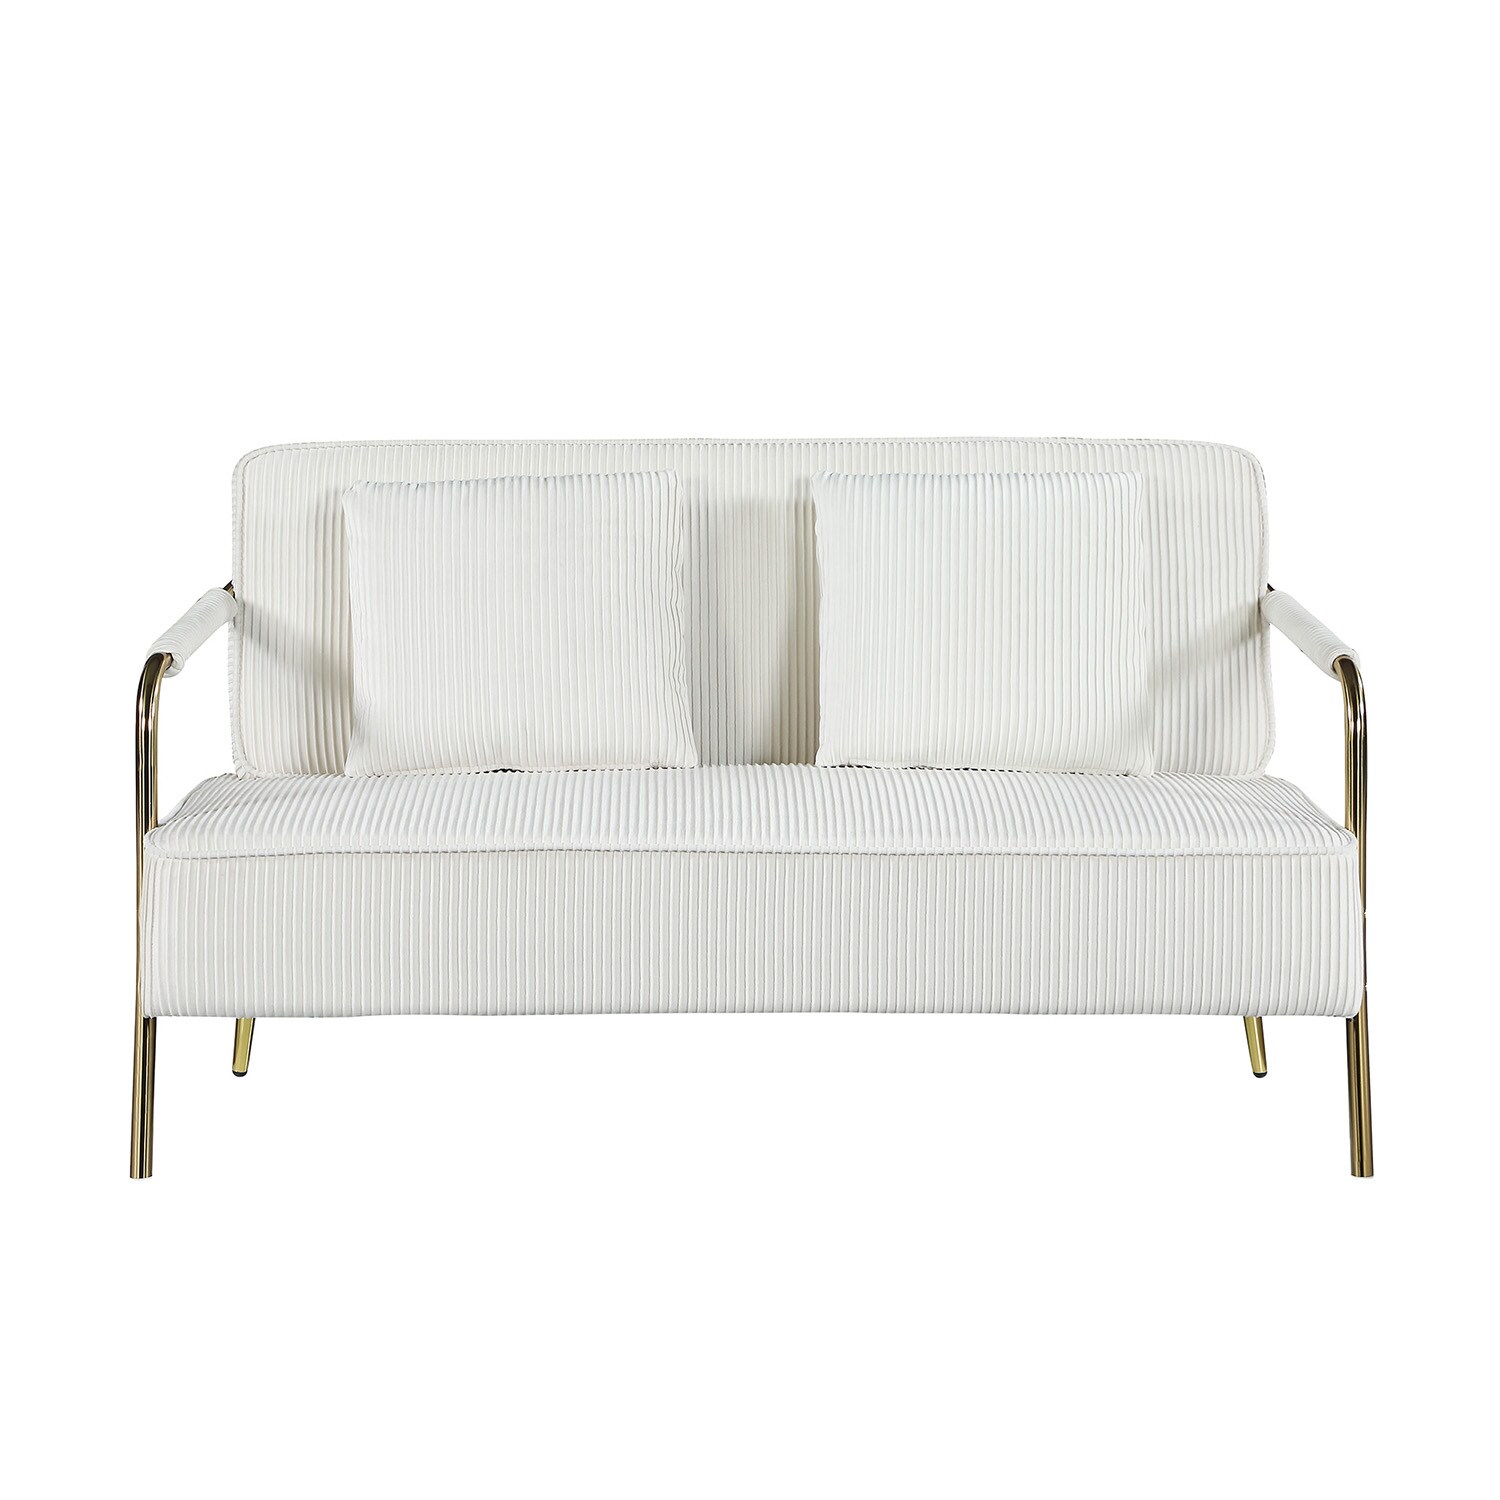 57.8 Velvet Upholstered Sofa, Loveseat Sofa with 2 Pillows